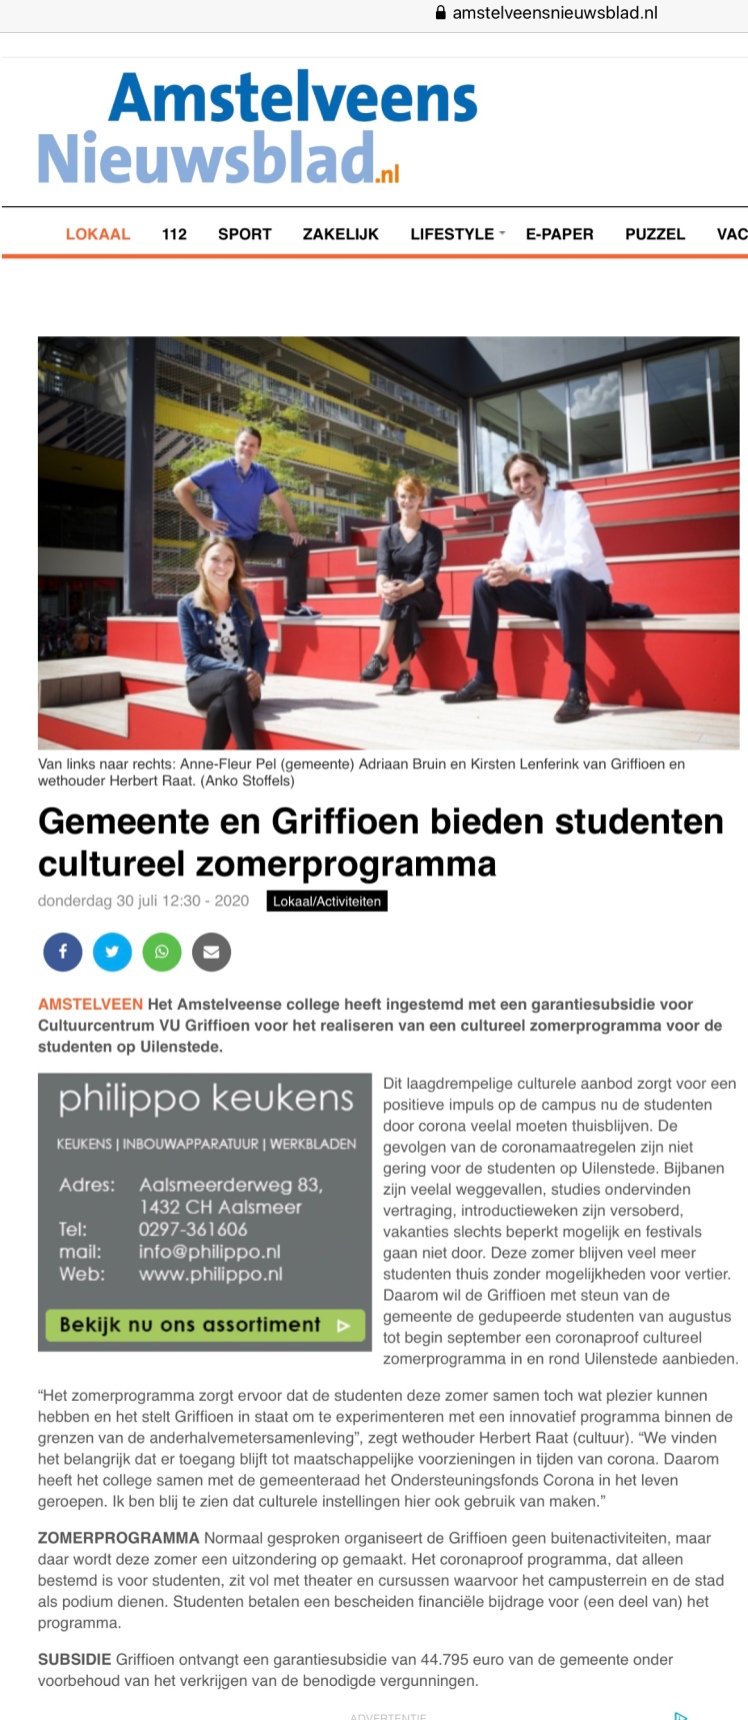 2020-Amstelveens Nieuwsblad: Steun voor een cultureel zomerprogramma voor het Griffioen Uilenstede- Anne Fleur Pel, Adriaan Bruin, Kirsten Lenferink en Herbert Raat